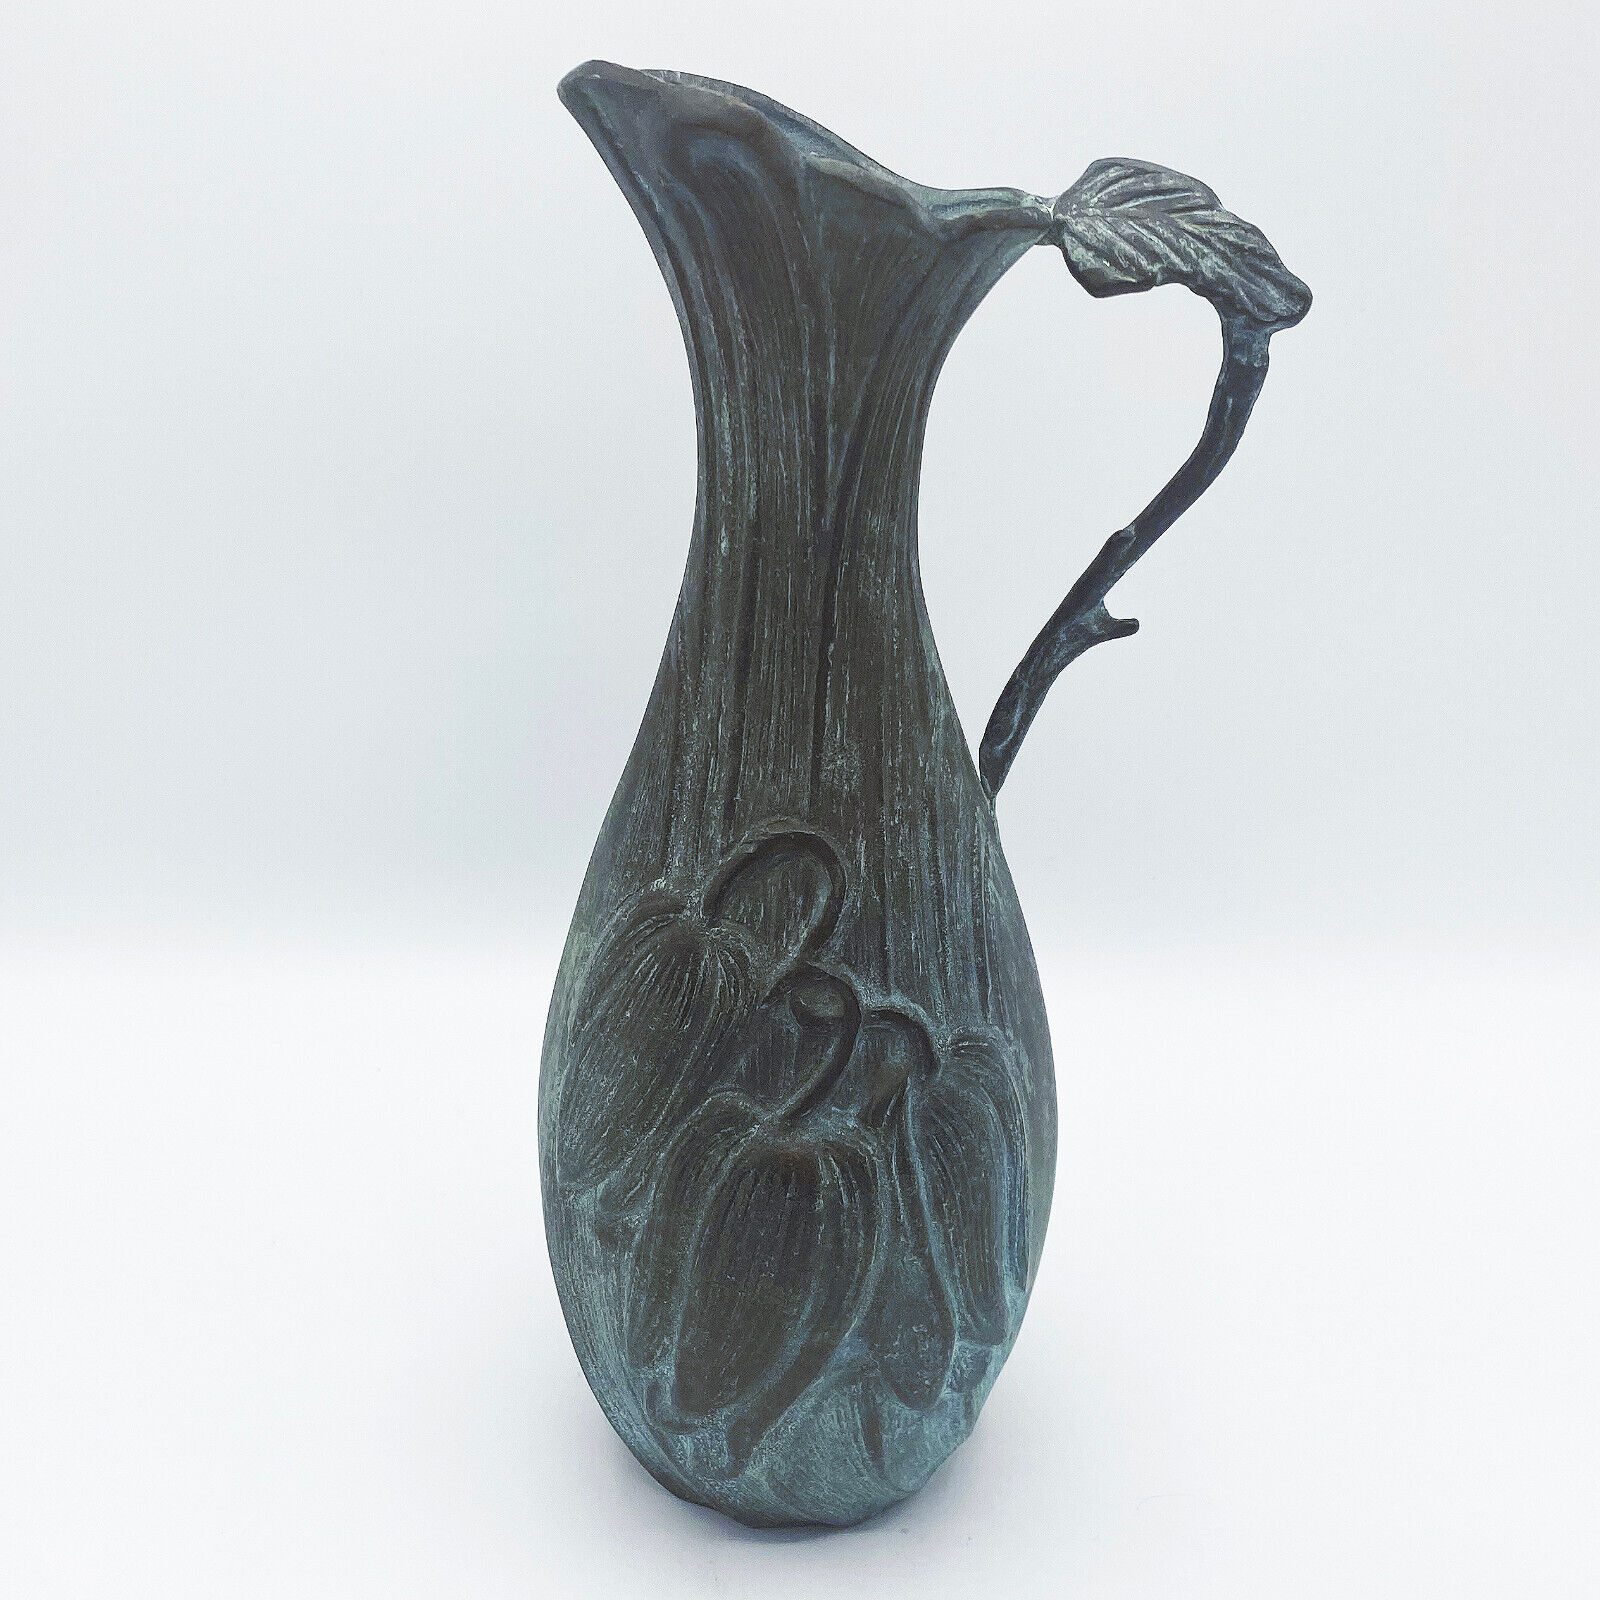 Vintage 60s Art Nouveau Revival Bronze Floral Pitcher Vase with Verdigris Patina